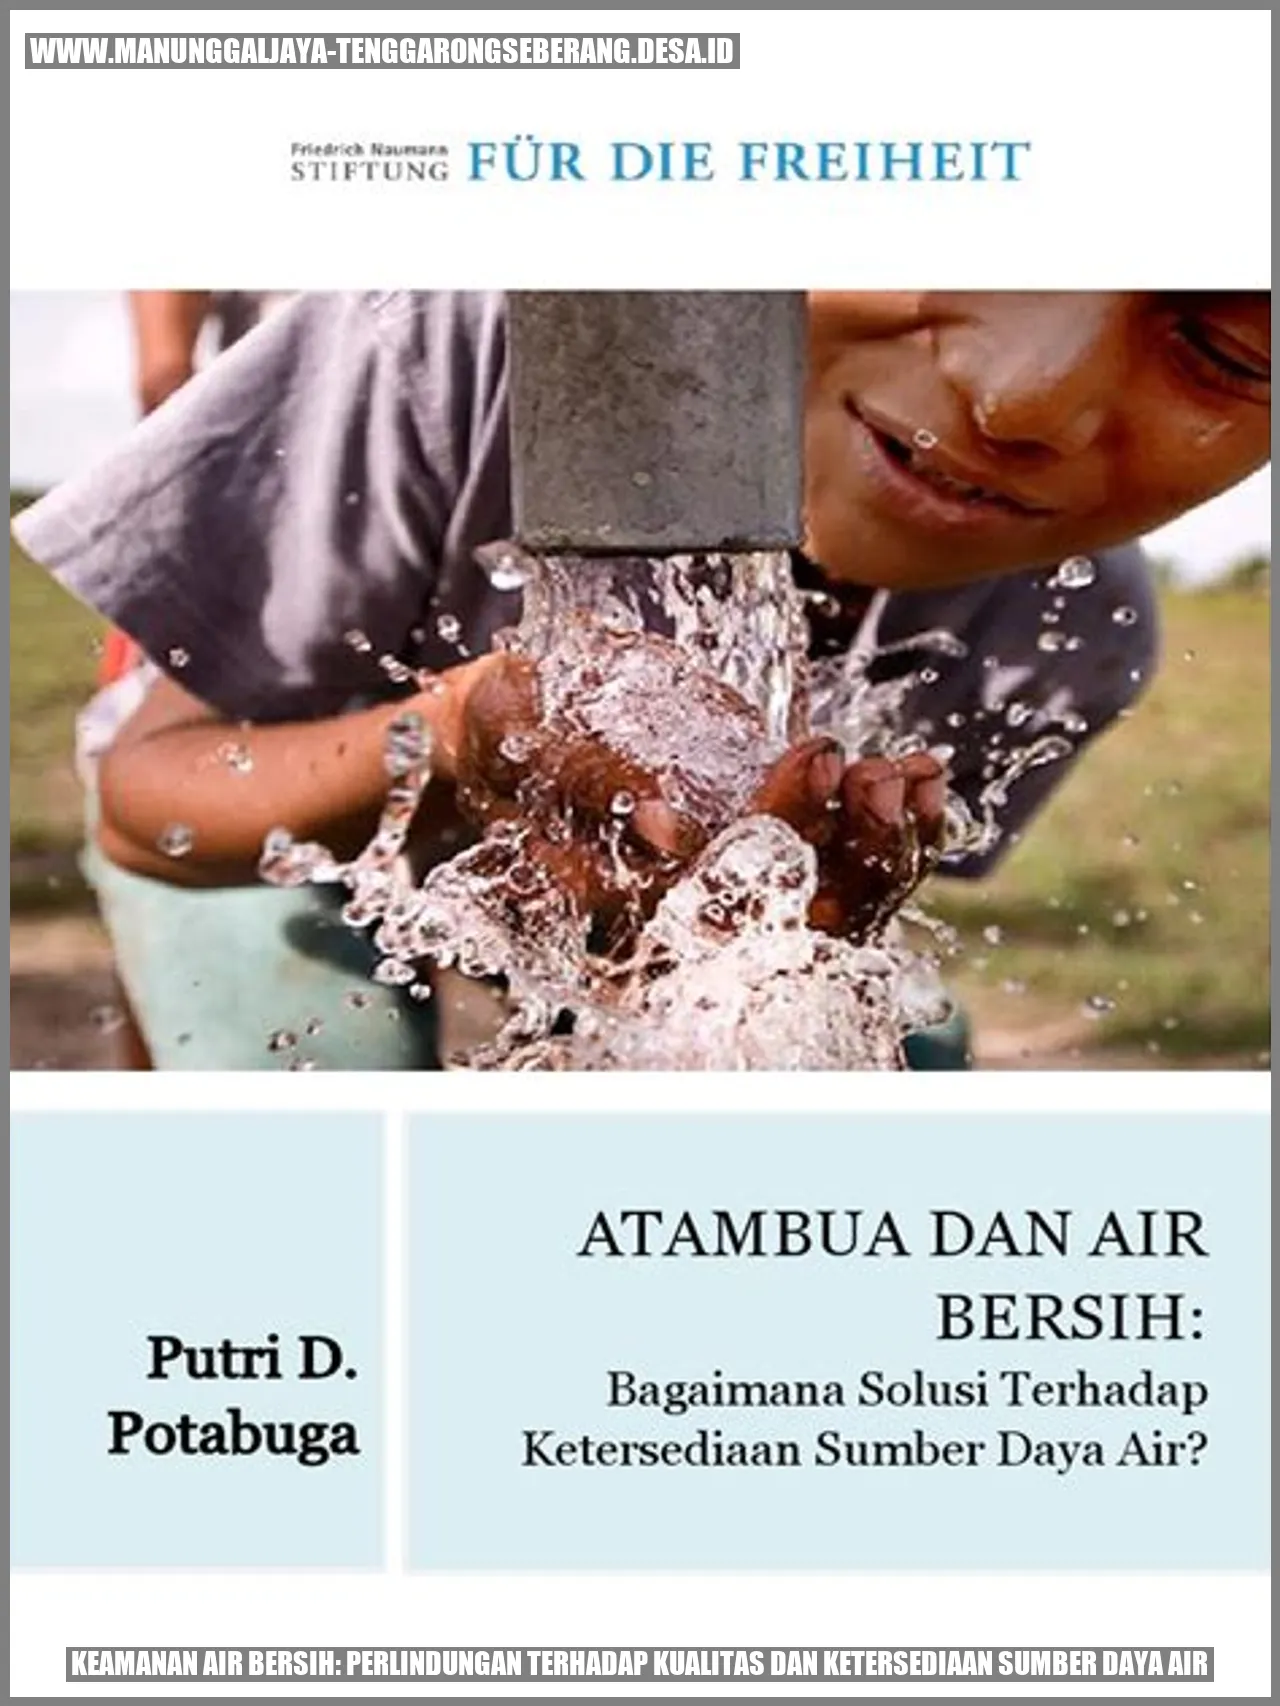 Keamanan Air Bersih: Perlindungan terhadap Kualitas dan Ketersediaan Sumber Daya Air